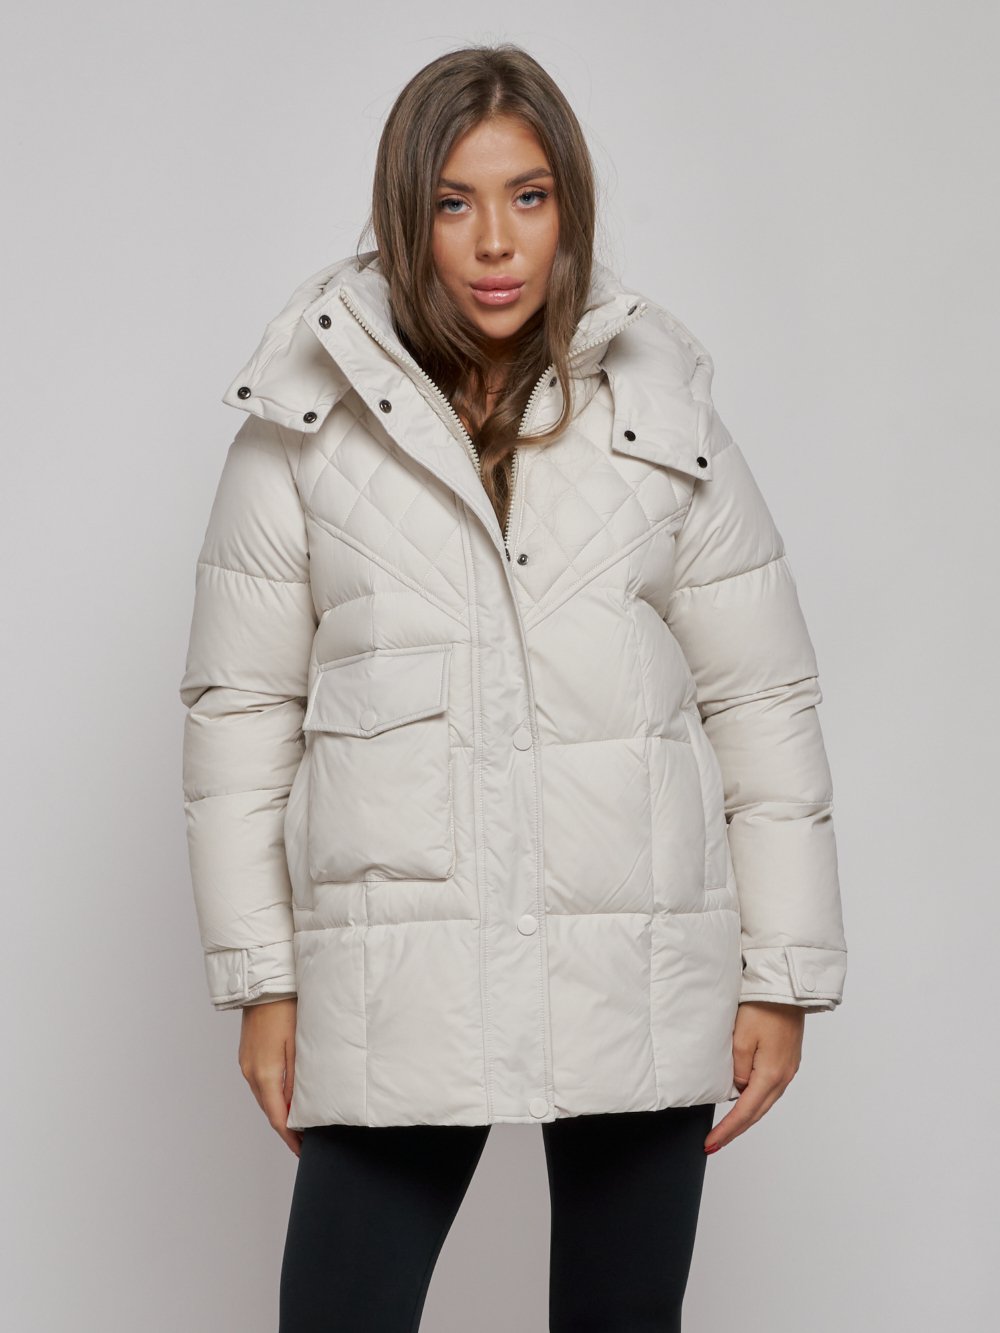 Купить куртку зимнюю оптом от производителя недорого в Москве 52301B 1